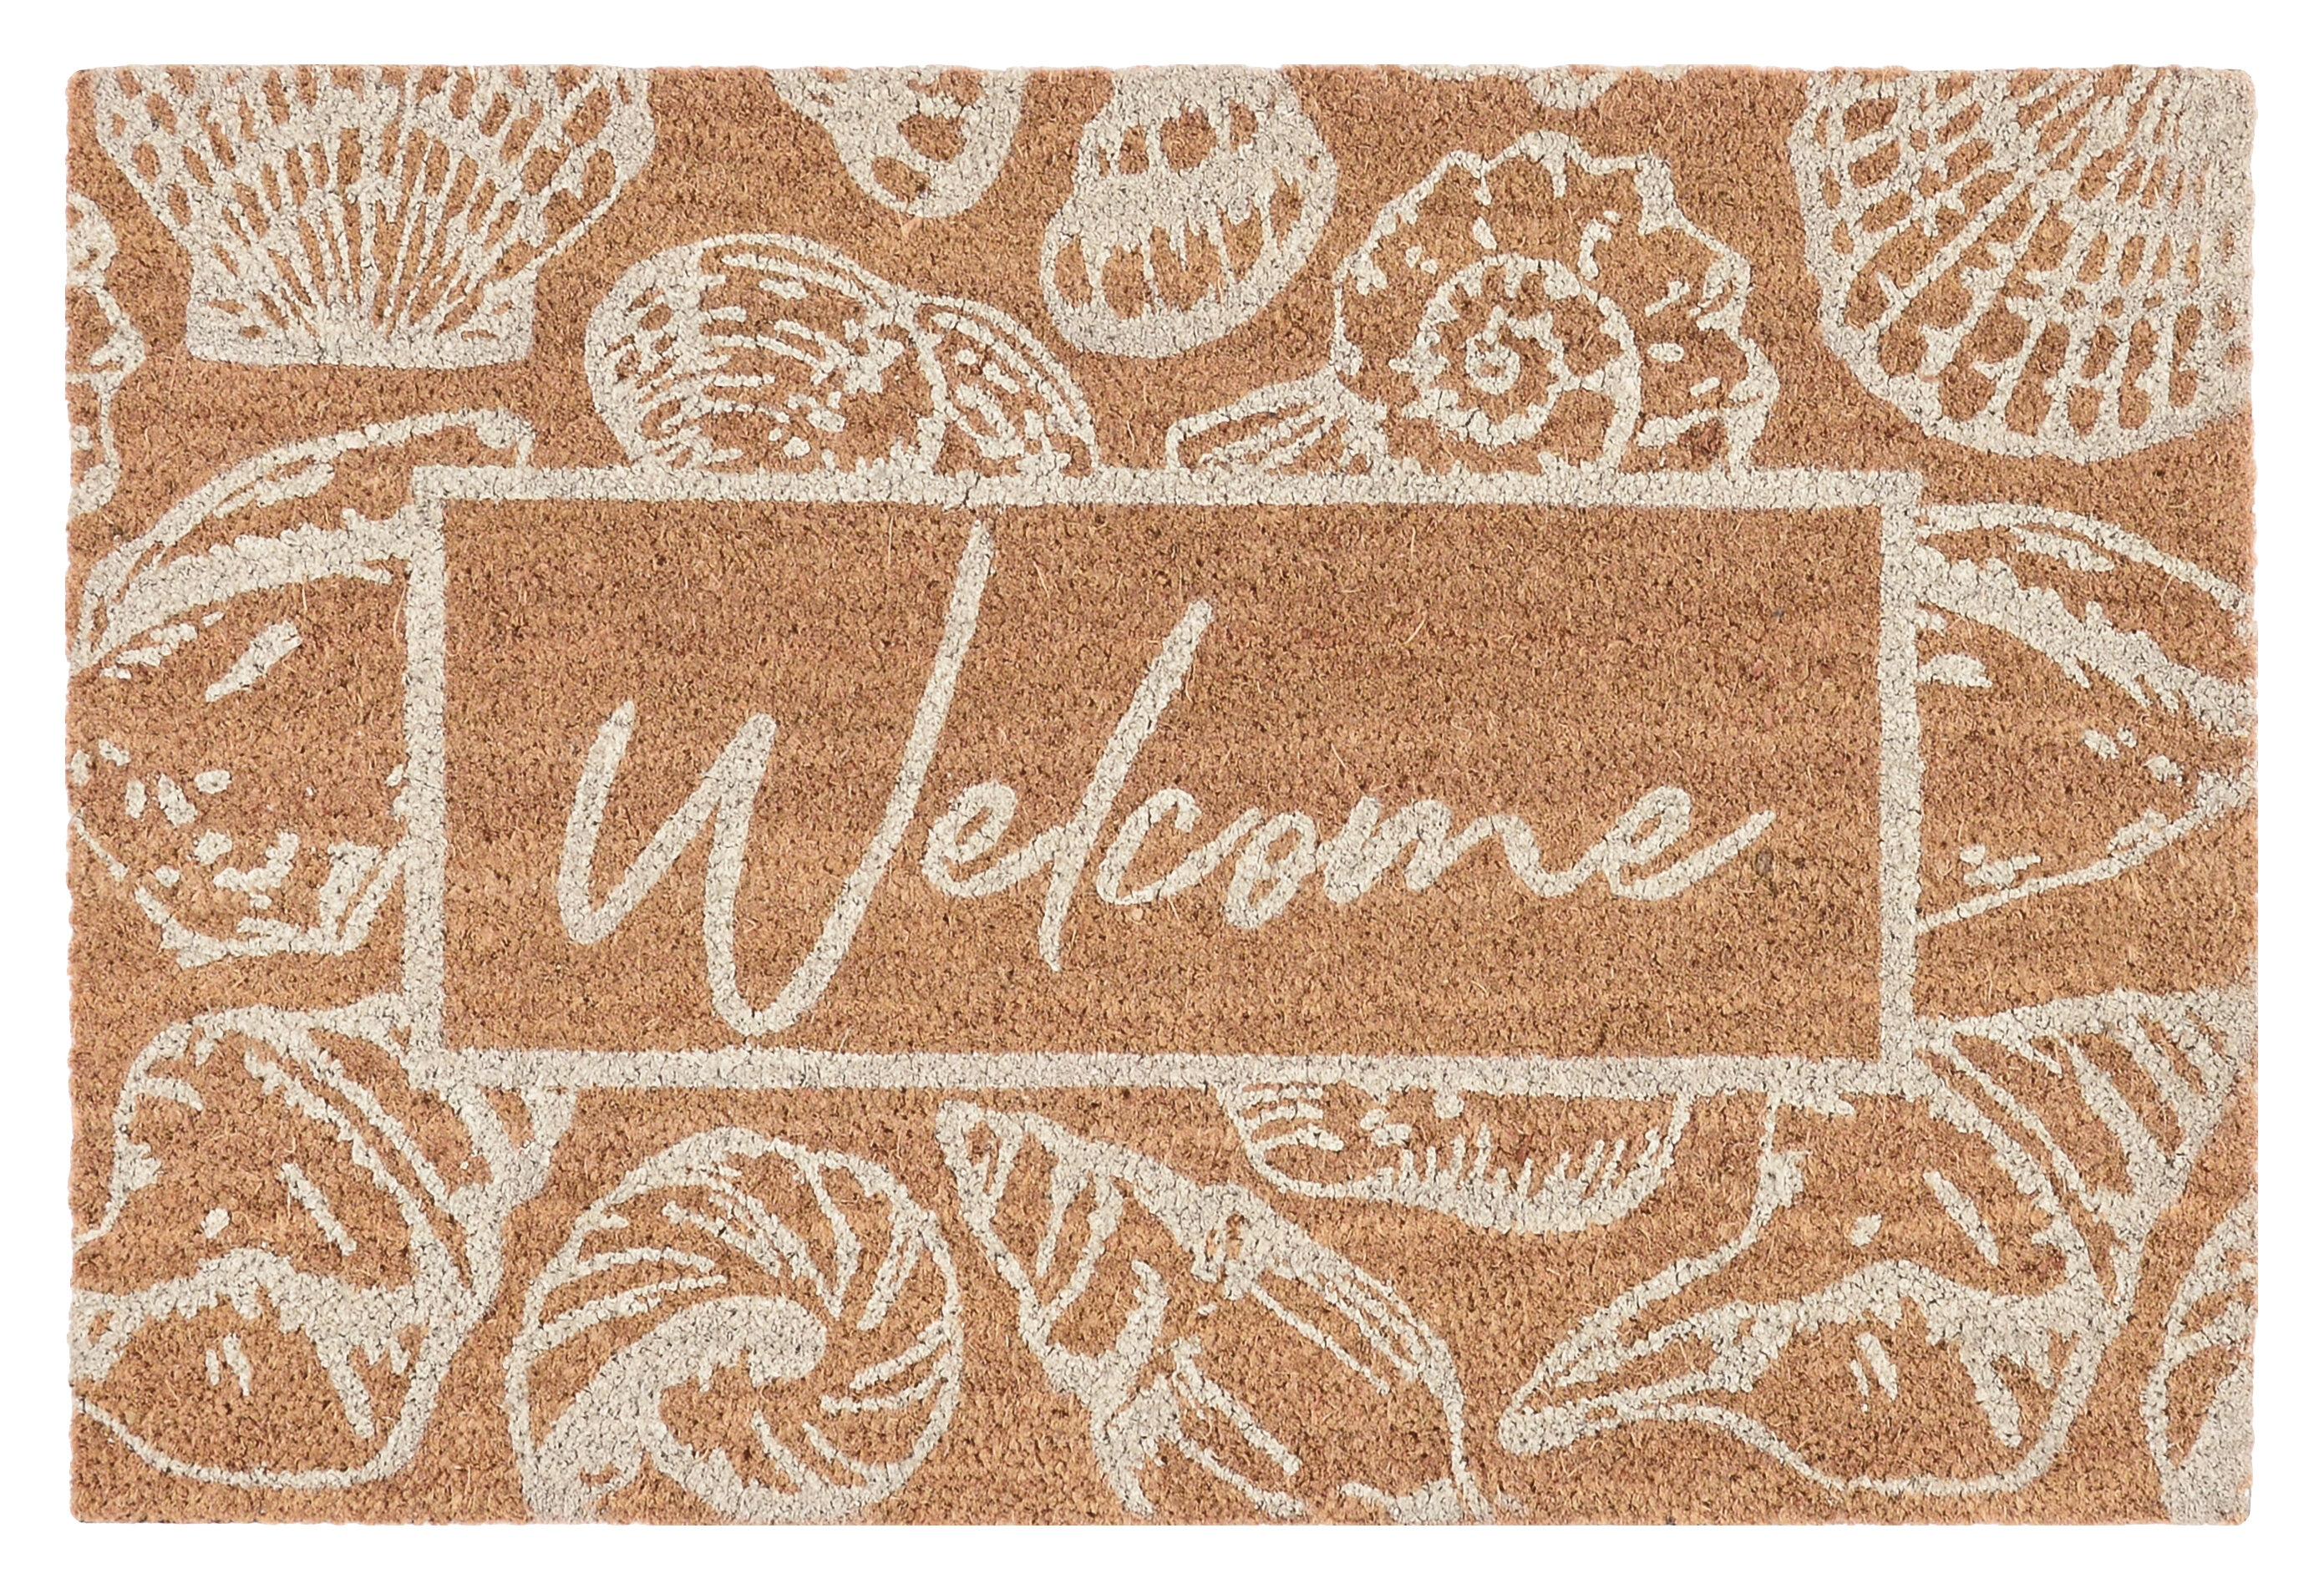 Home Sweet Apartment Doormat, Coir Doormat, Welcome Mat, Home Door Mat